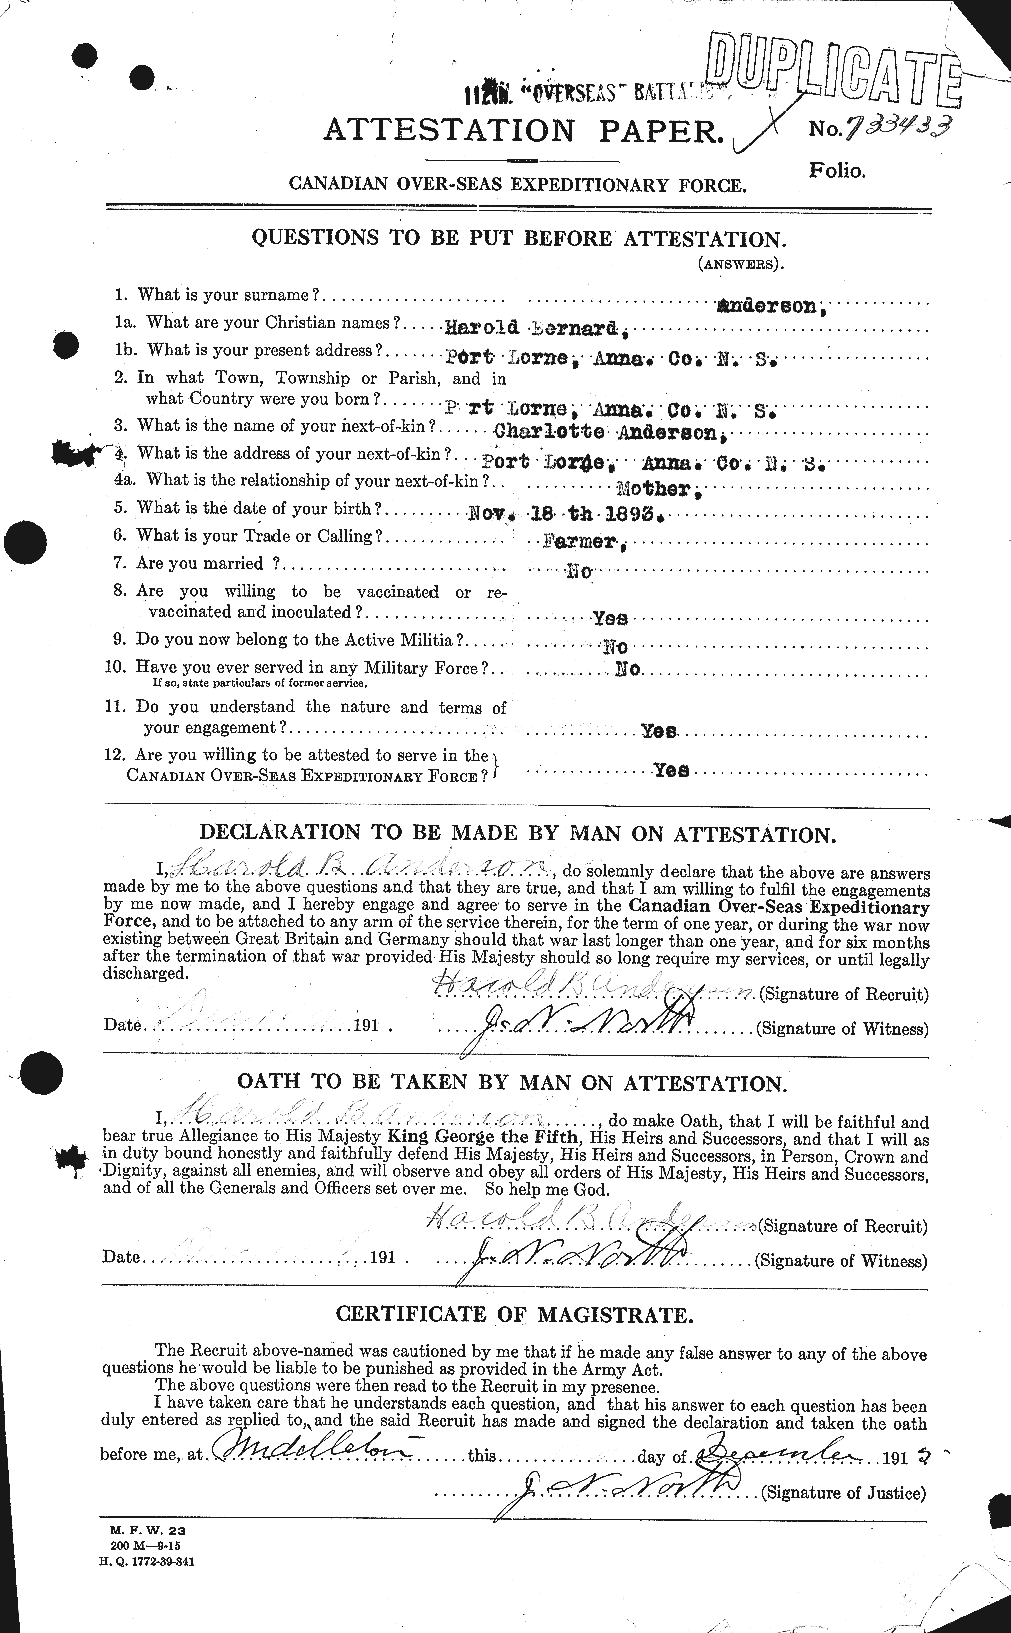 Dossiers du Personnel de la Première Guerre mondiale - CEC 213291a